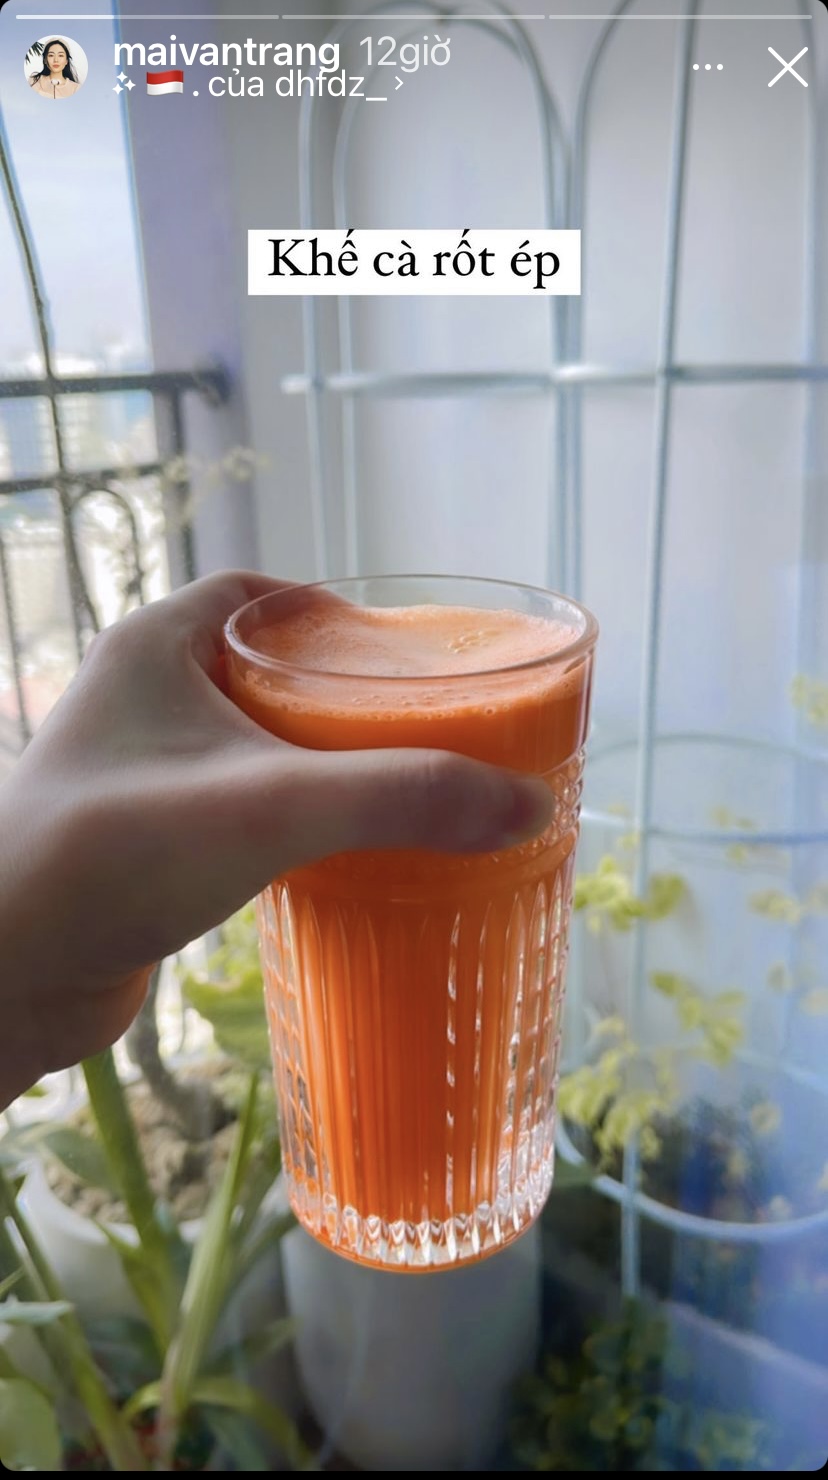 Beauty blogger Mai Vân Trang bắt đầu buổi sáng bằng một ly nước khế cà rốt ép.